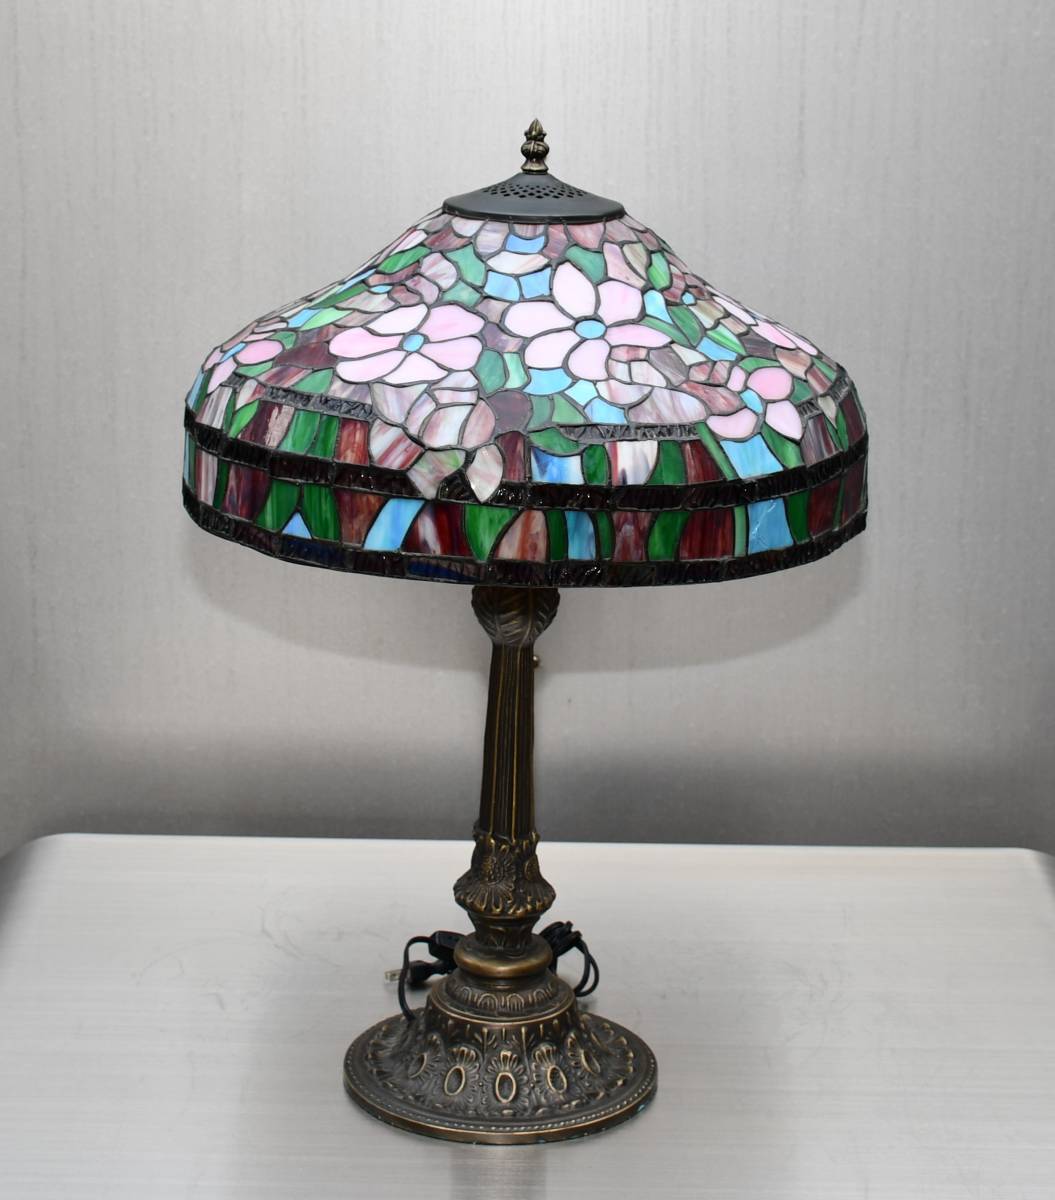  античный витражное стекло Tiffany стиль nai карты осветительное оборудование непрямое освещение клематис цветок большой диаметр примерно 46. высота примерно 66.